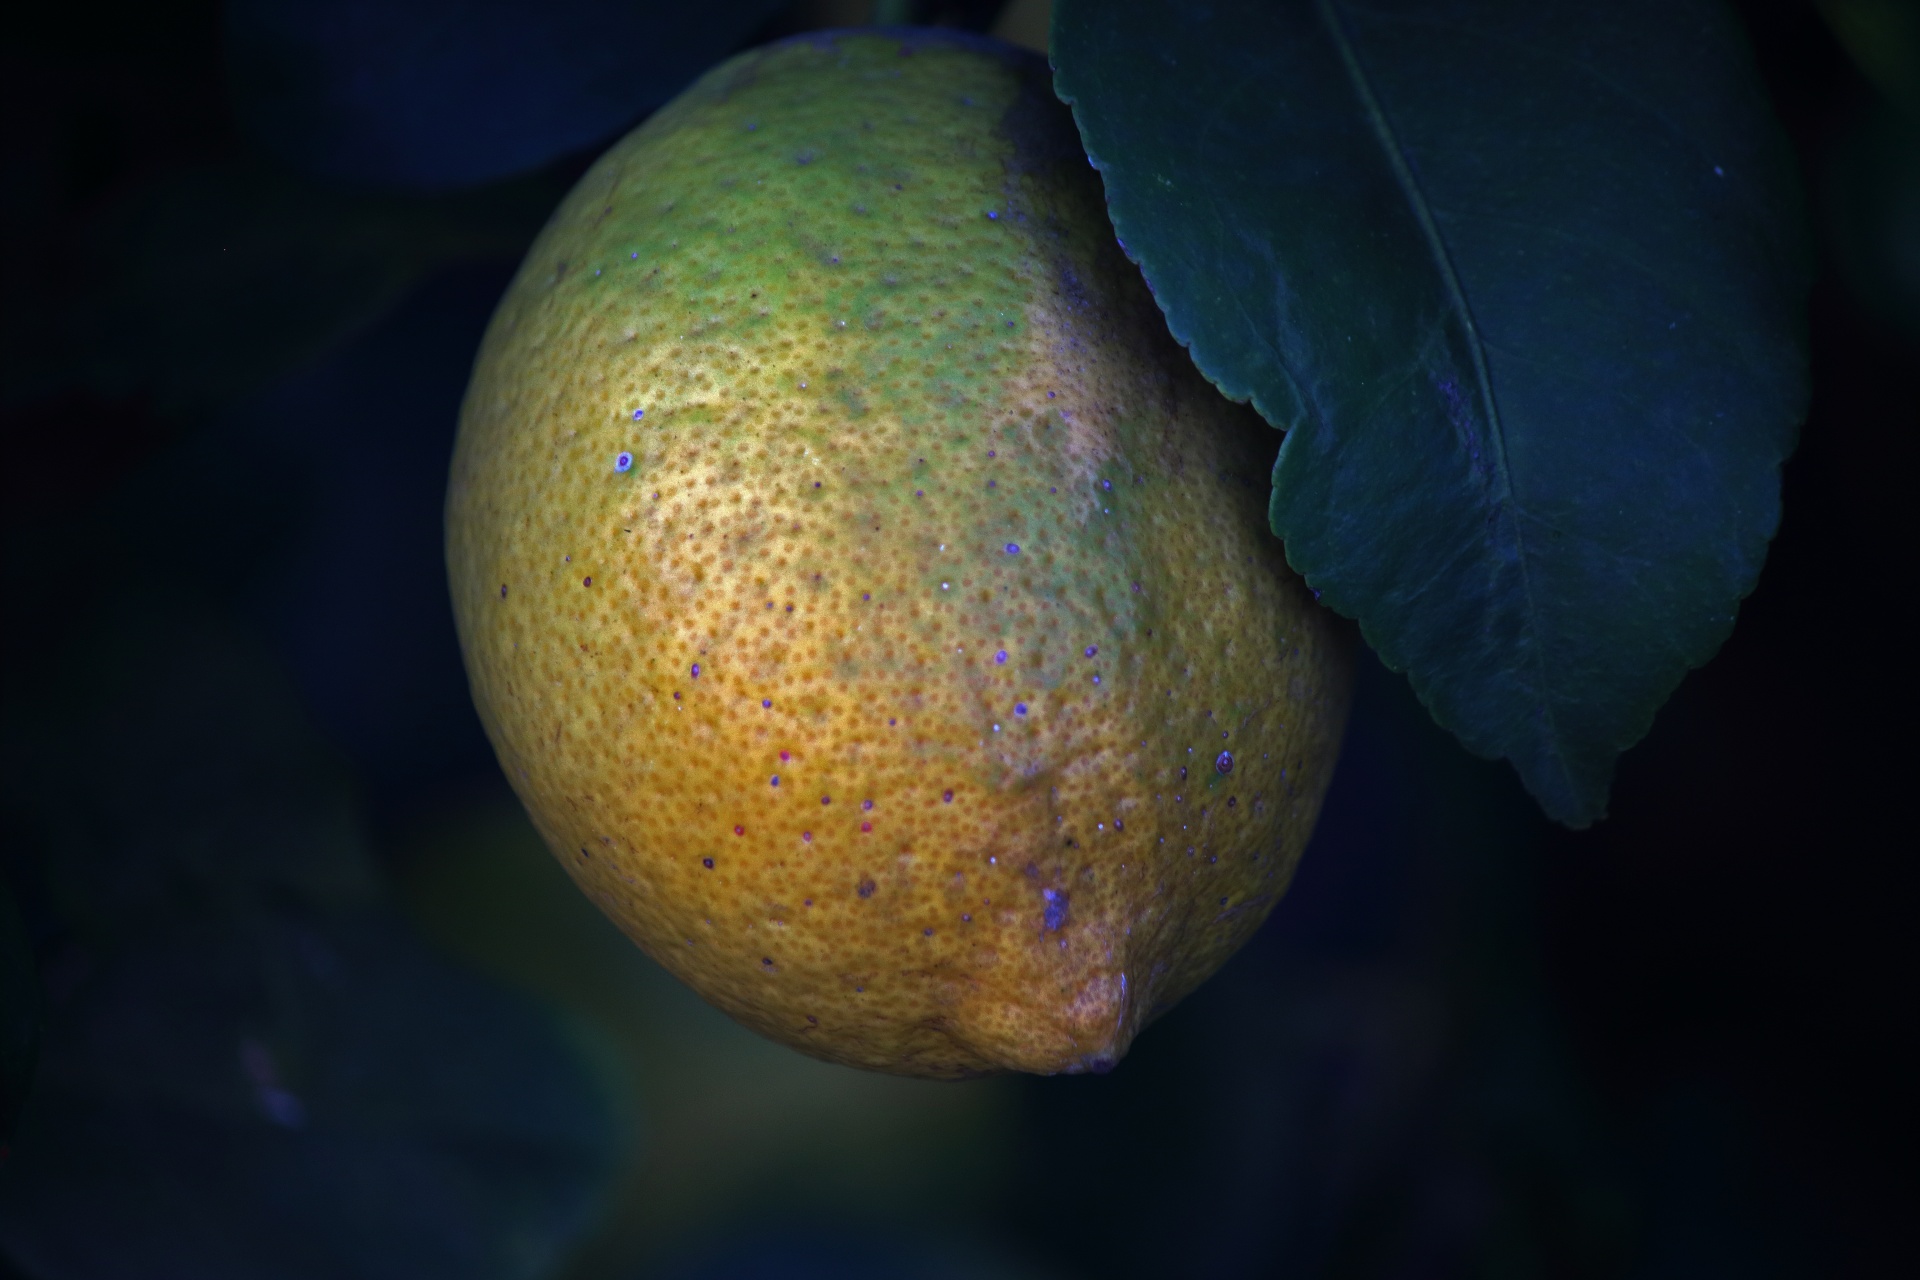 Pohled na zrání citron na stromě